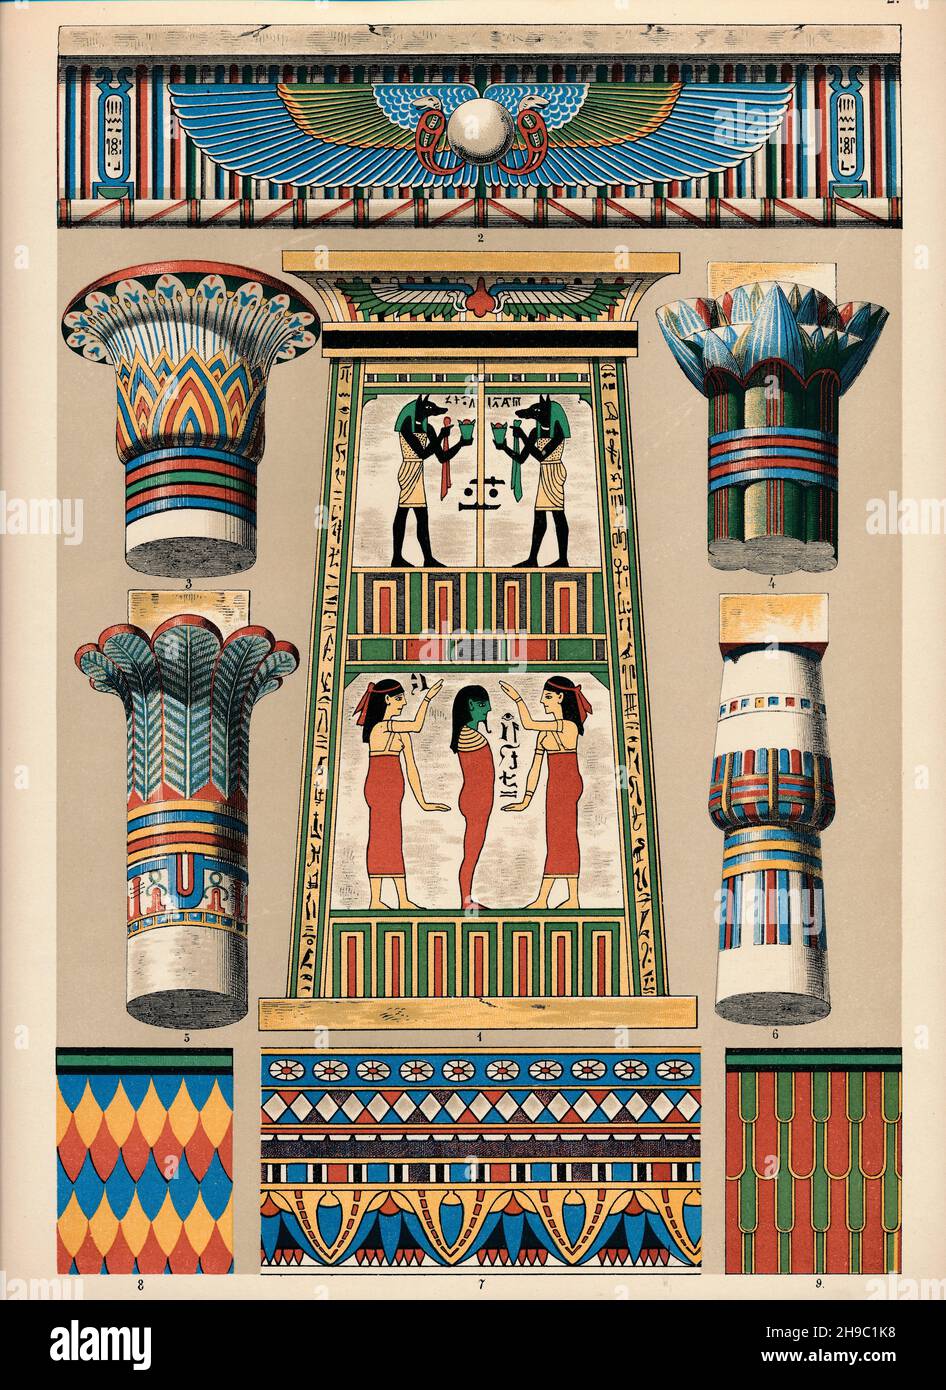 De arquitectura y pintura, jeroglíficos egipcios, pirámides y templos. Foto de stock